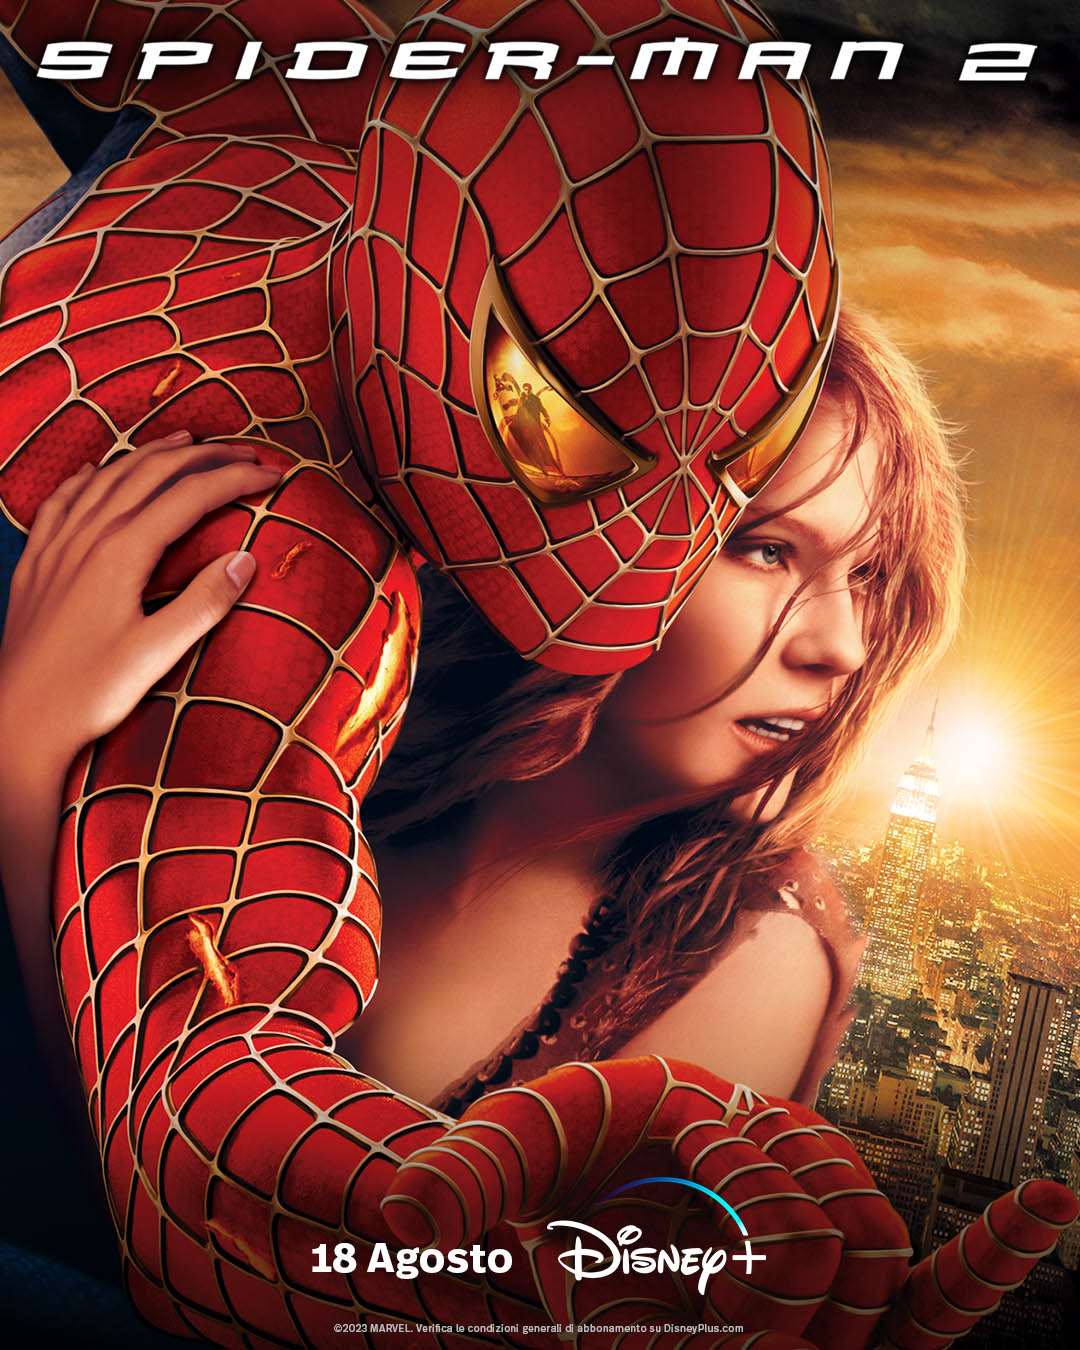 Spider-Man 2 (2004) - Poster Disney+